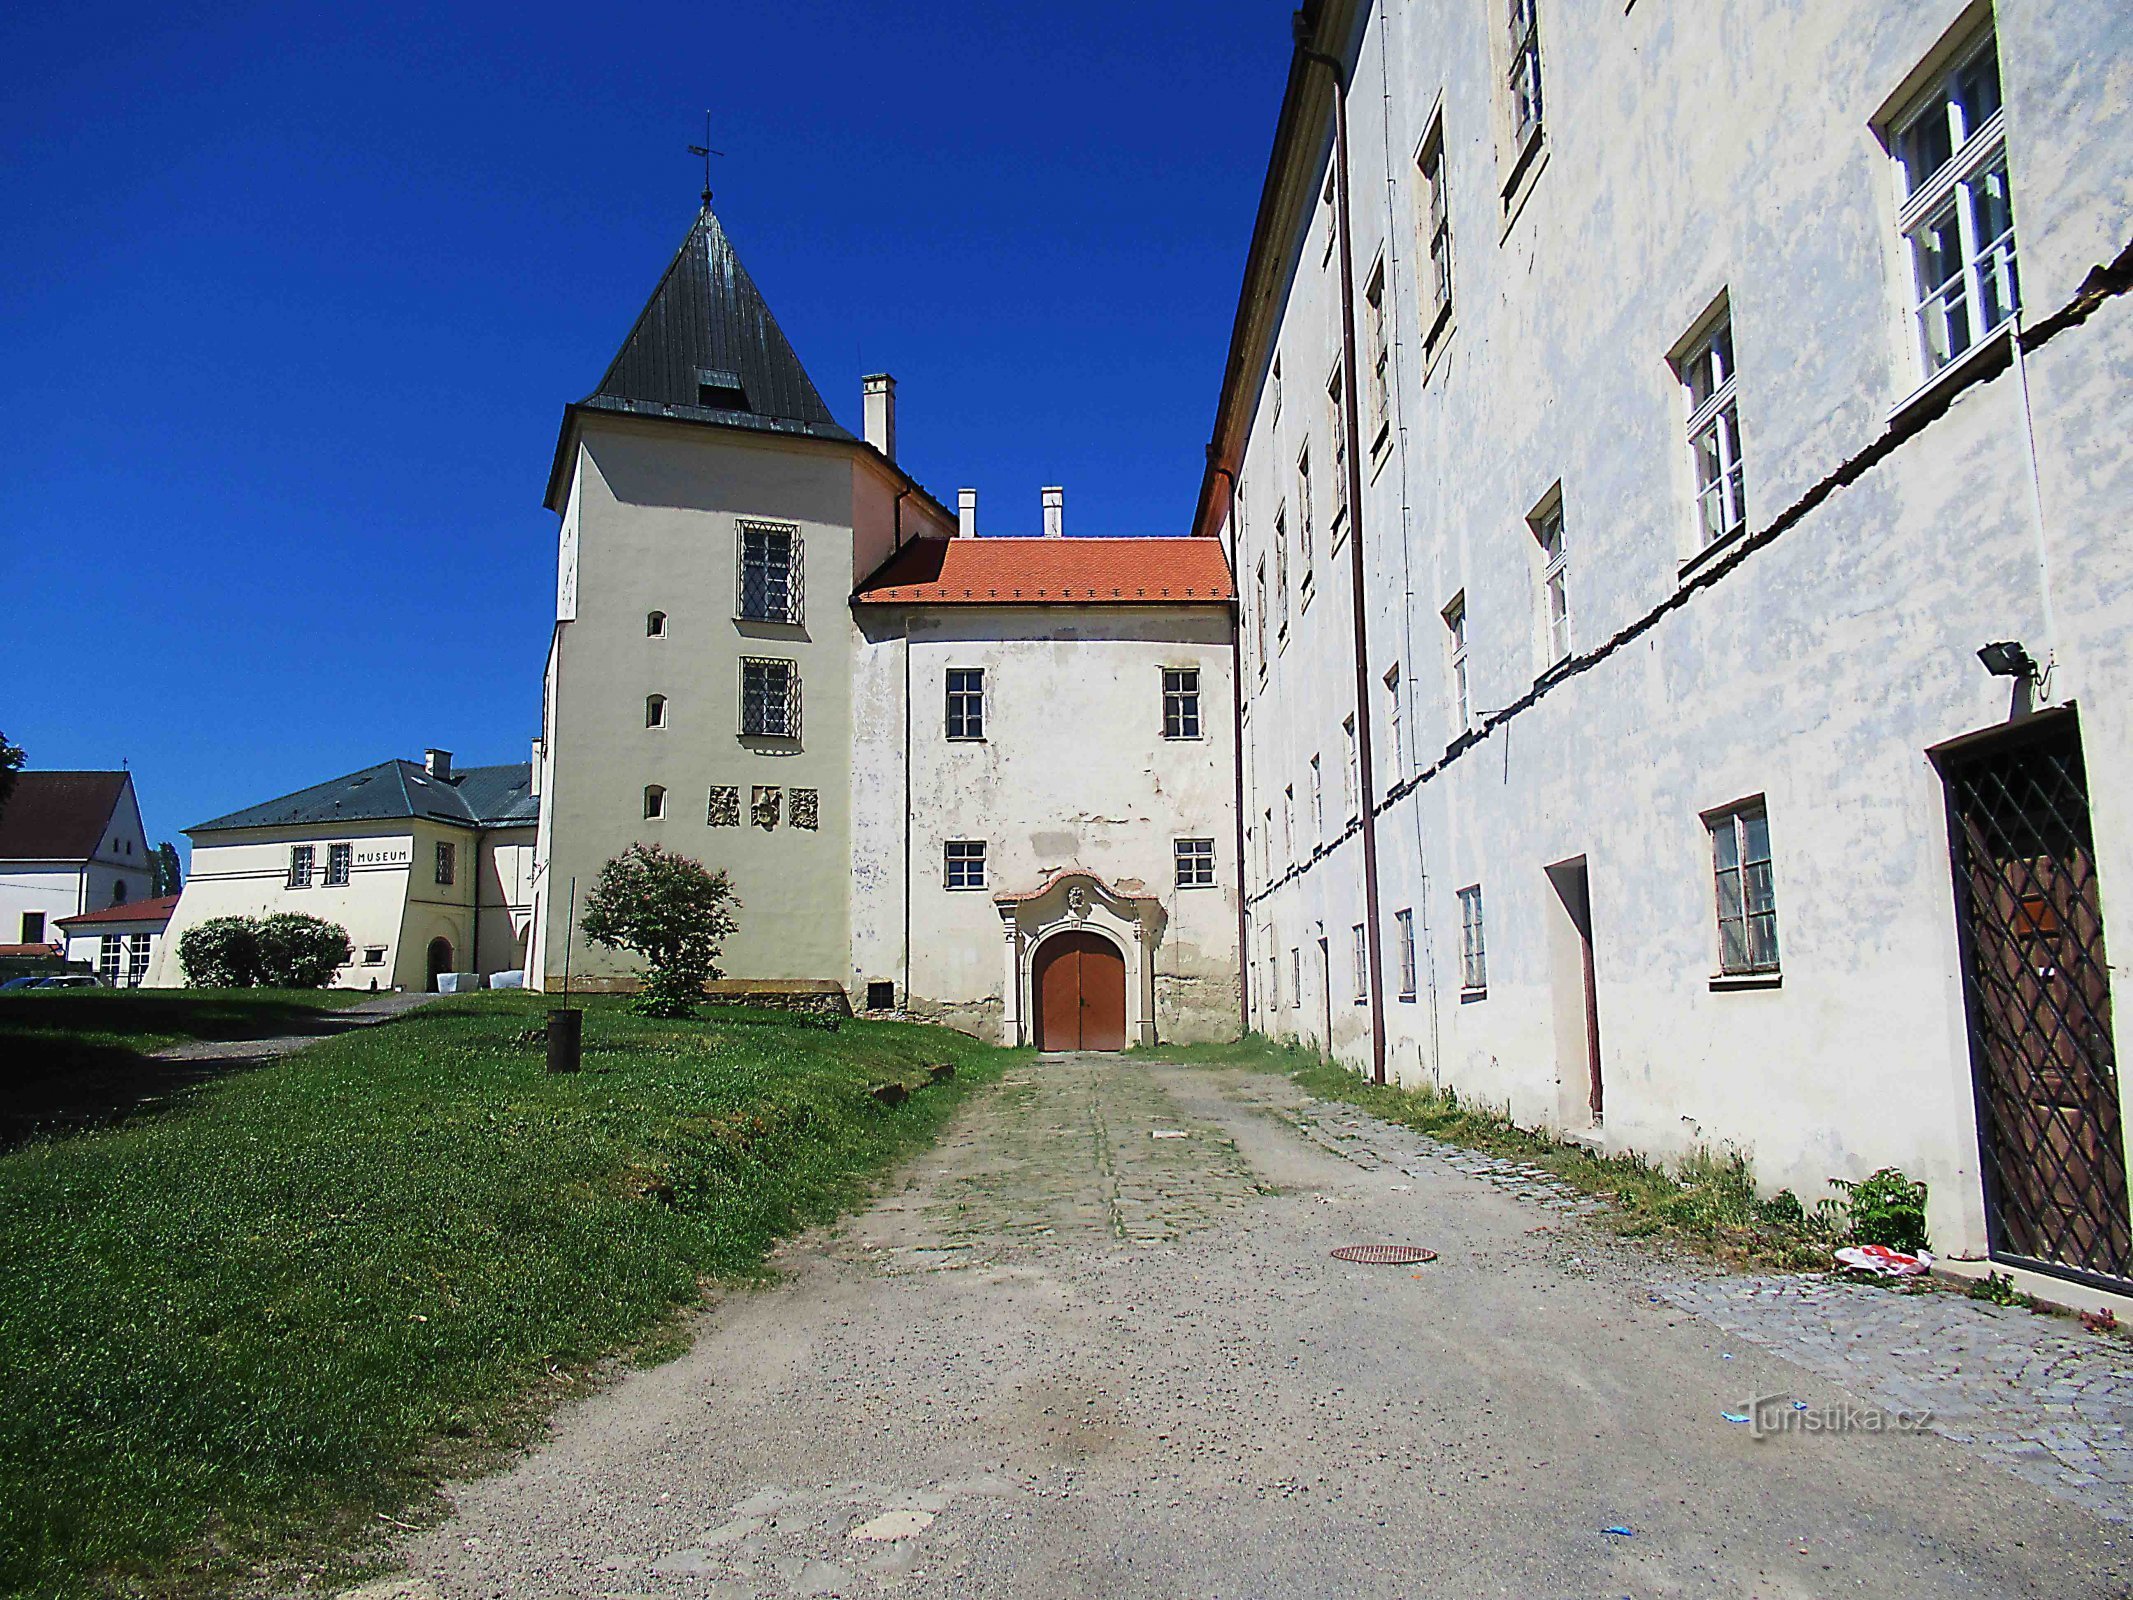 Το Μουσείο Vyškovska στην περιοχή του κάστρου